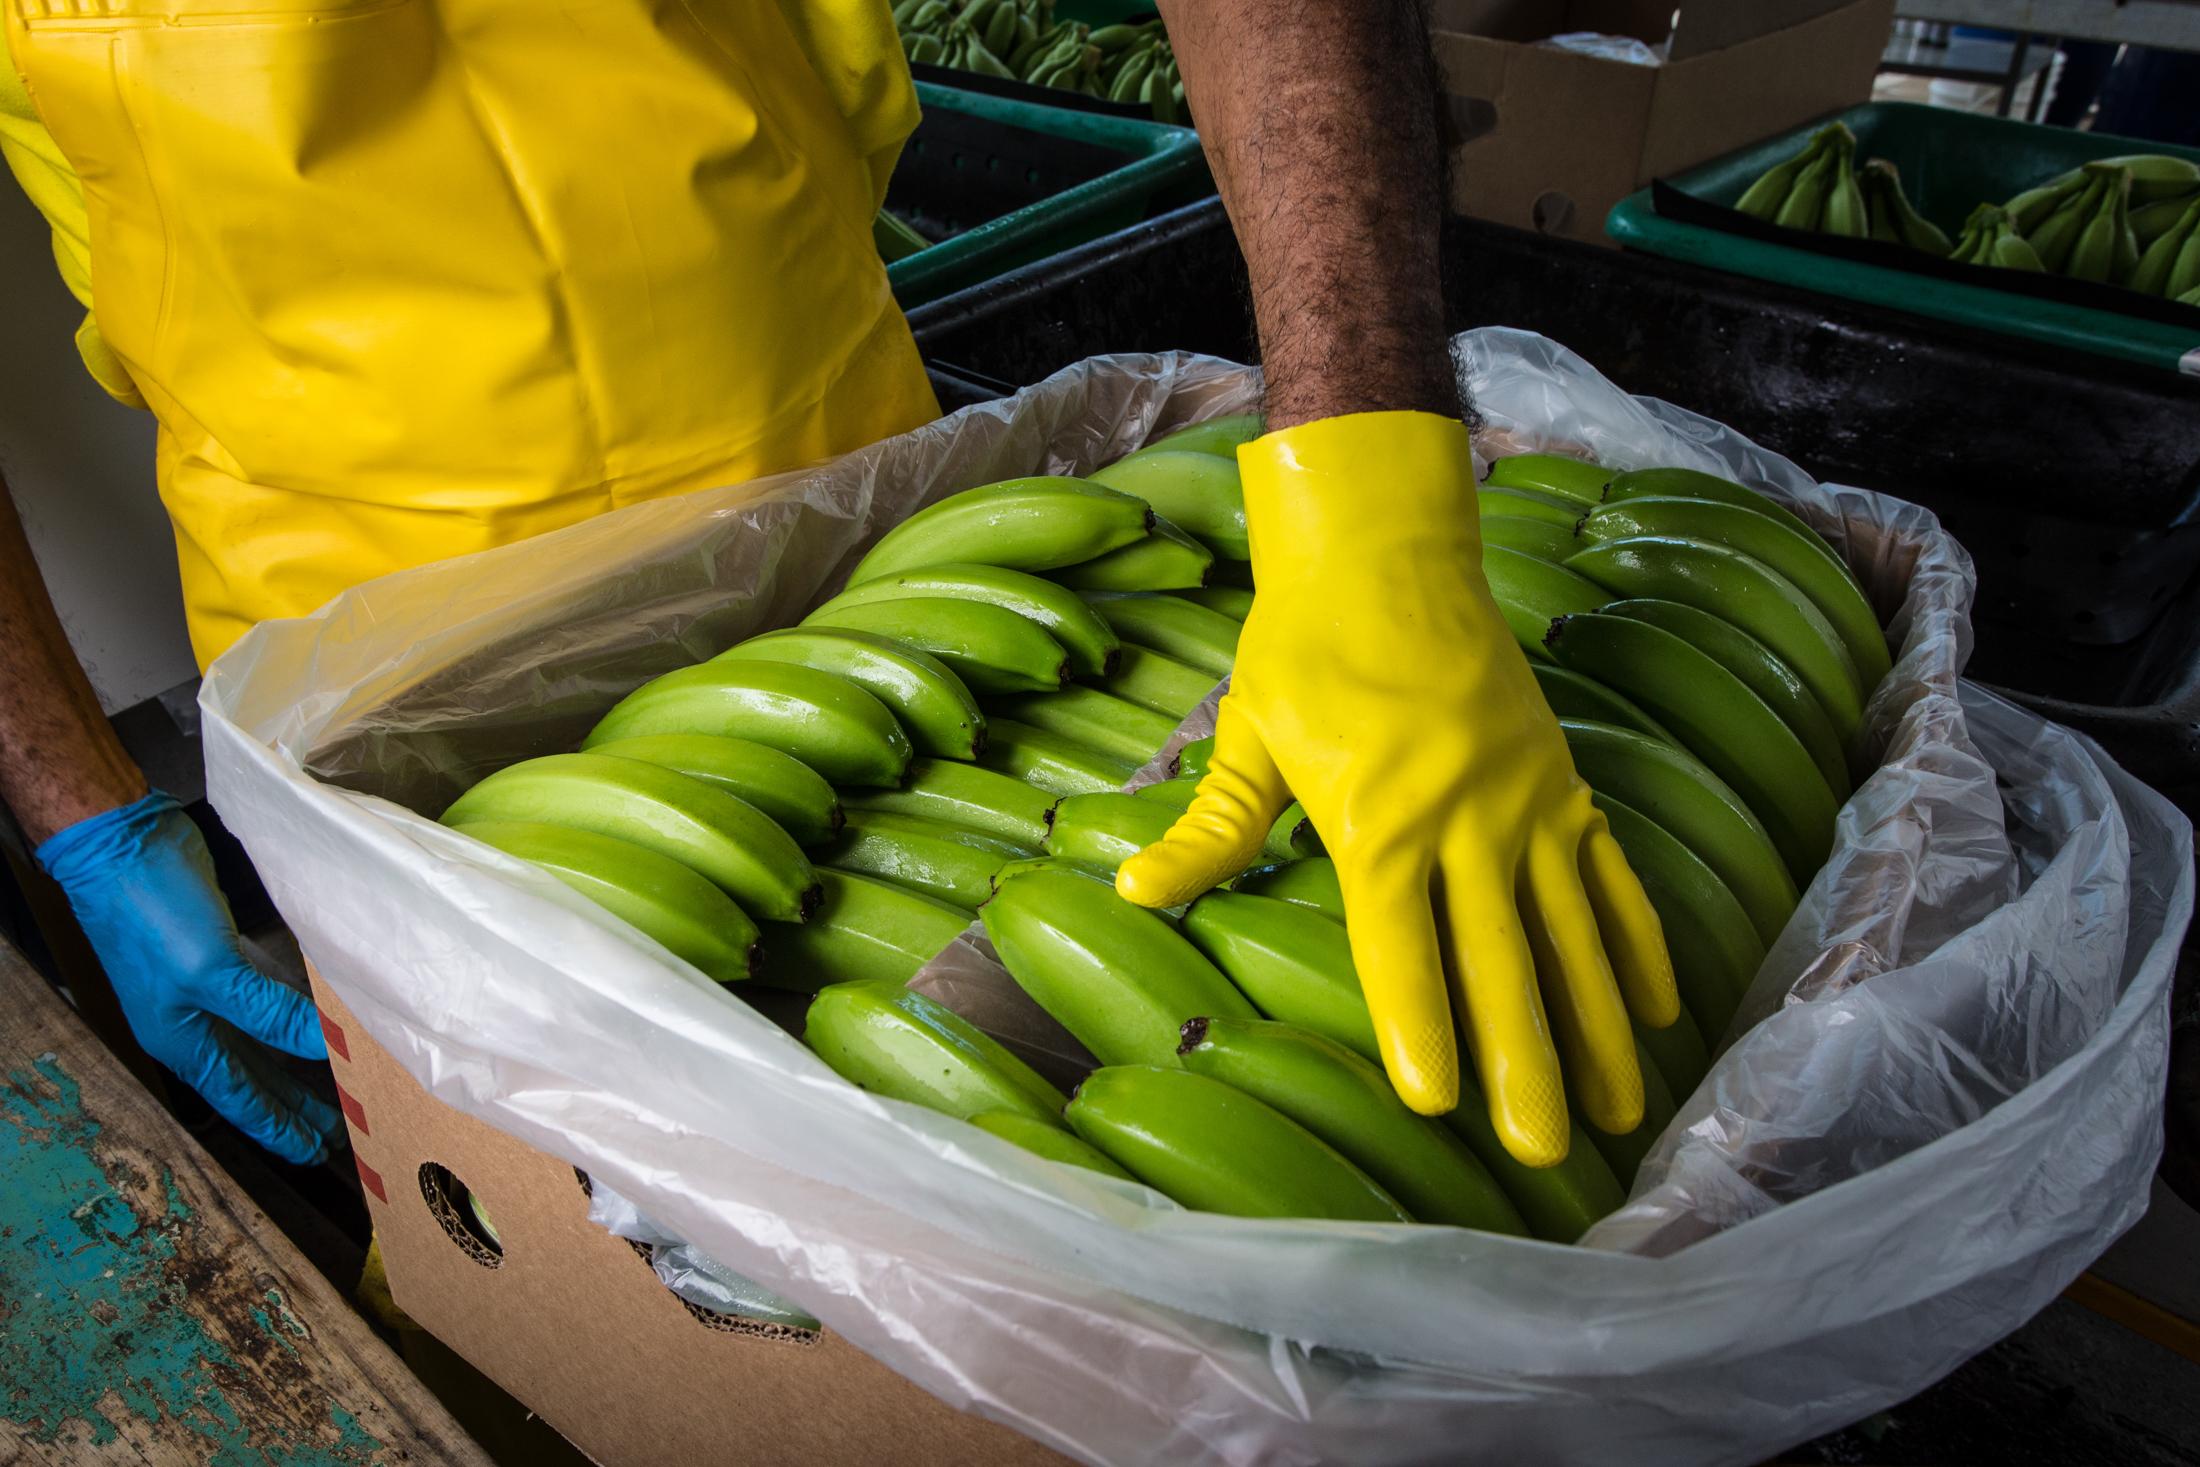 Proceso de empaquetado del banano en la finca productora “La lucha” de la Asociación Agraria...